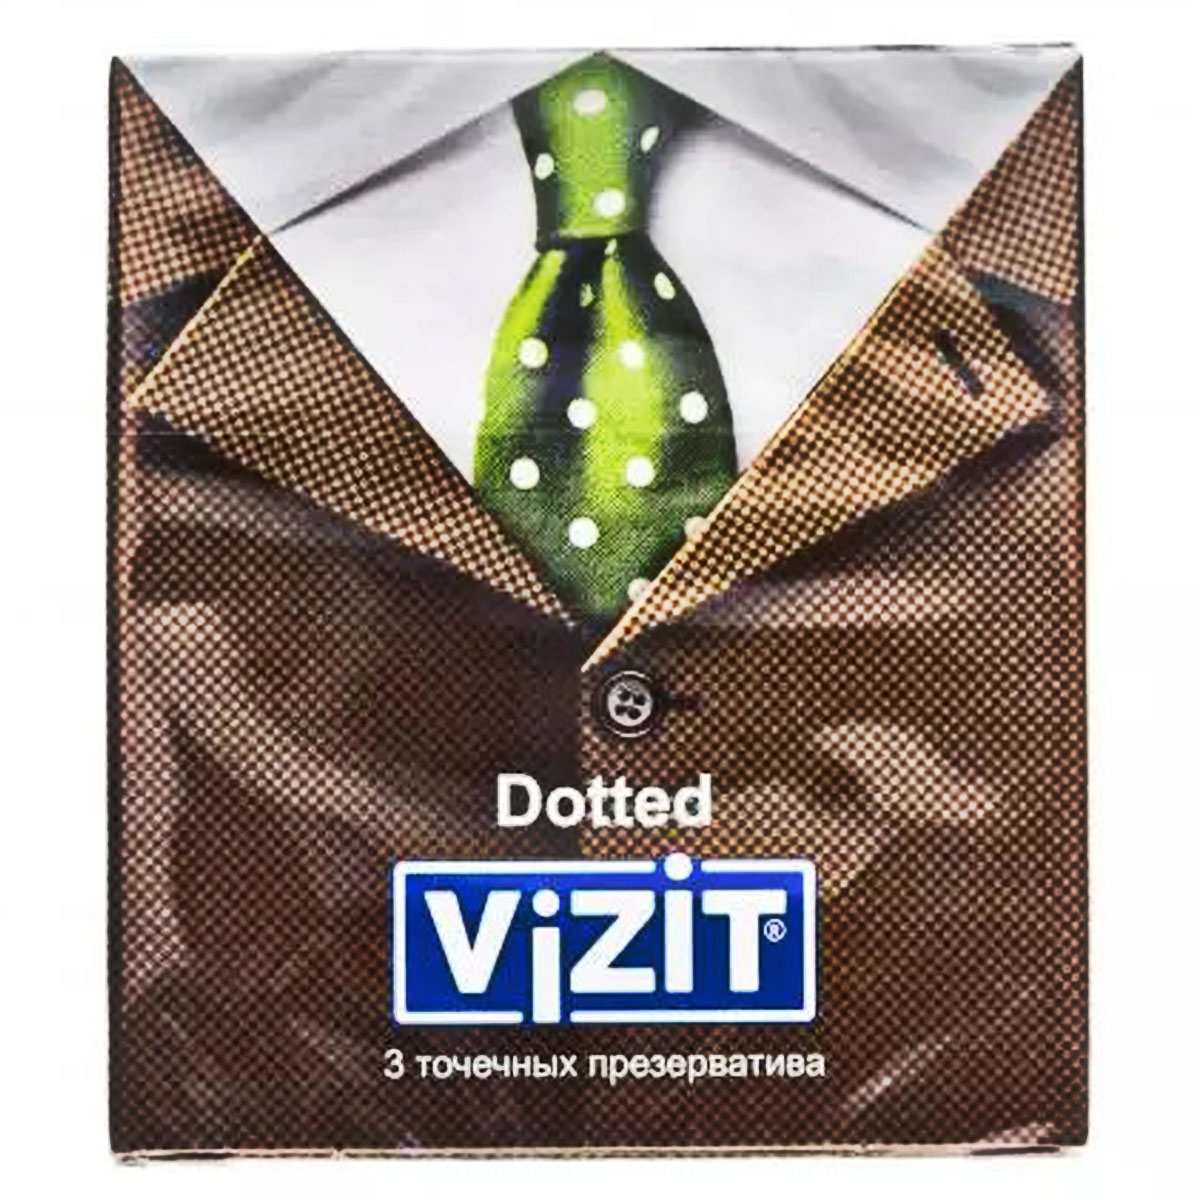 Визит Презервативы точечные, 3 шт (Vizit, Visit презервативы) фото 0